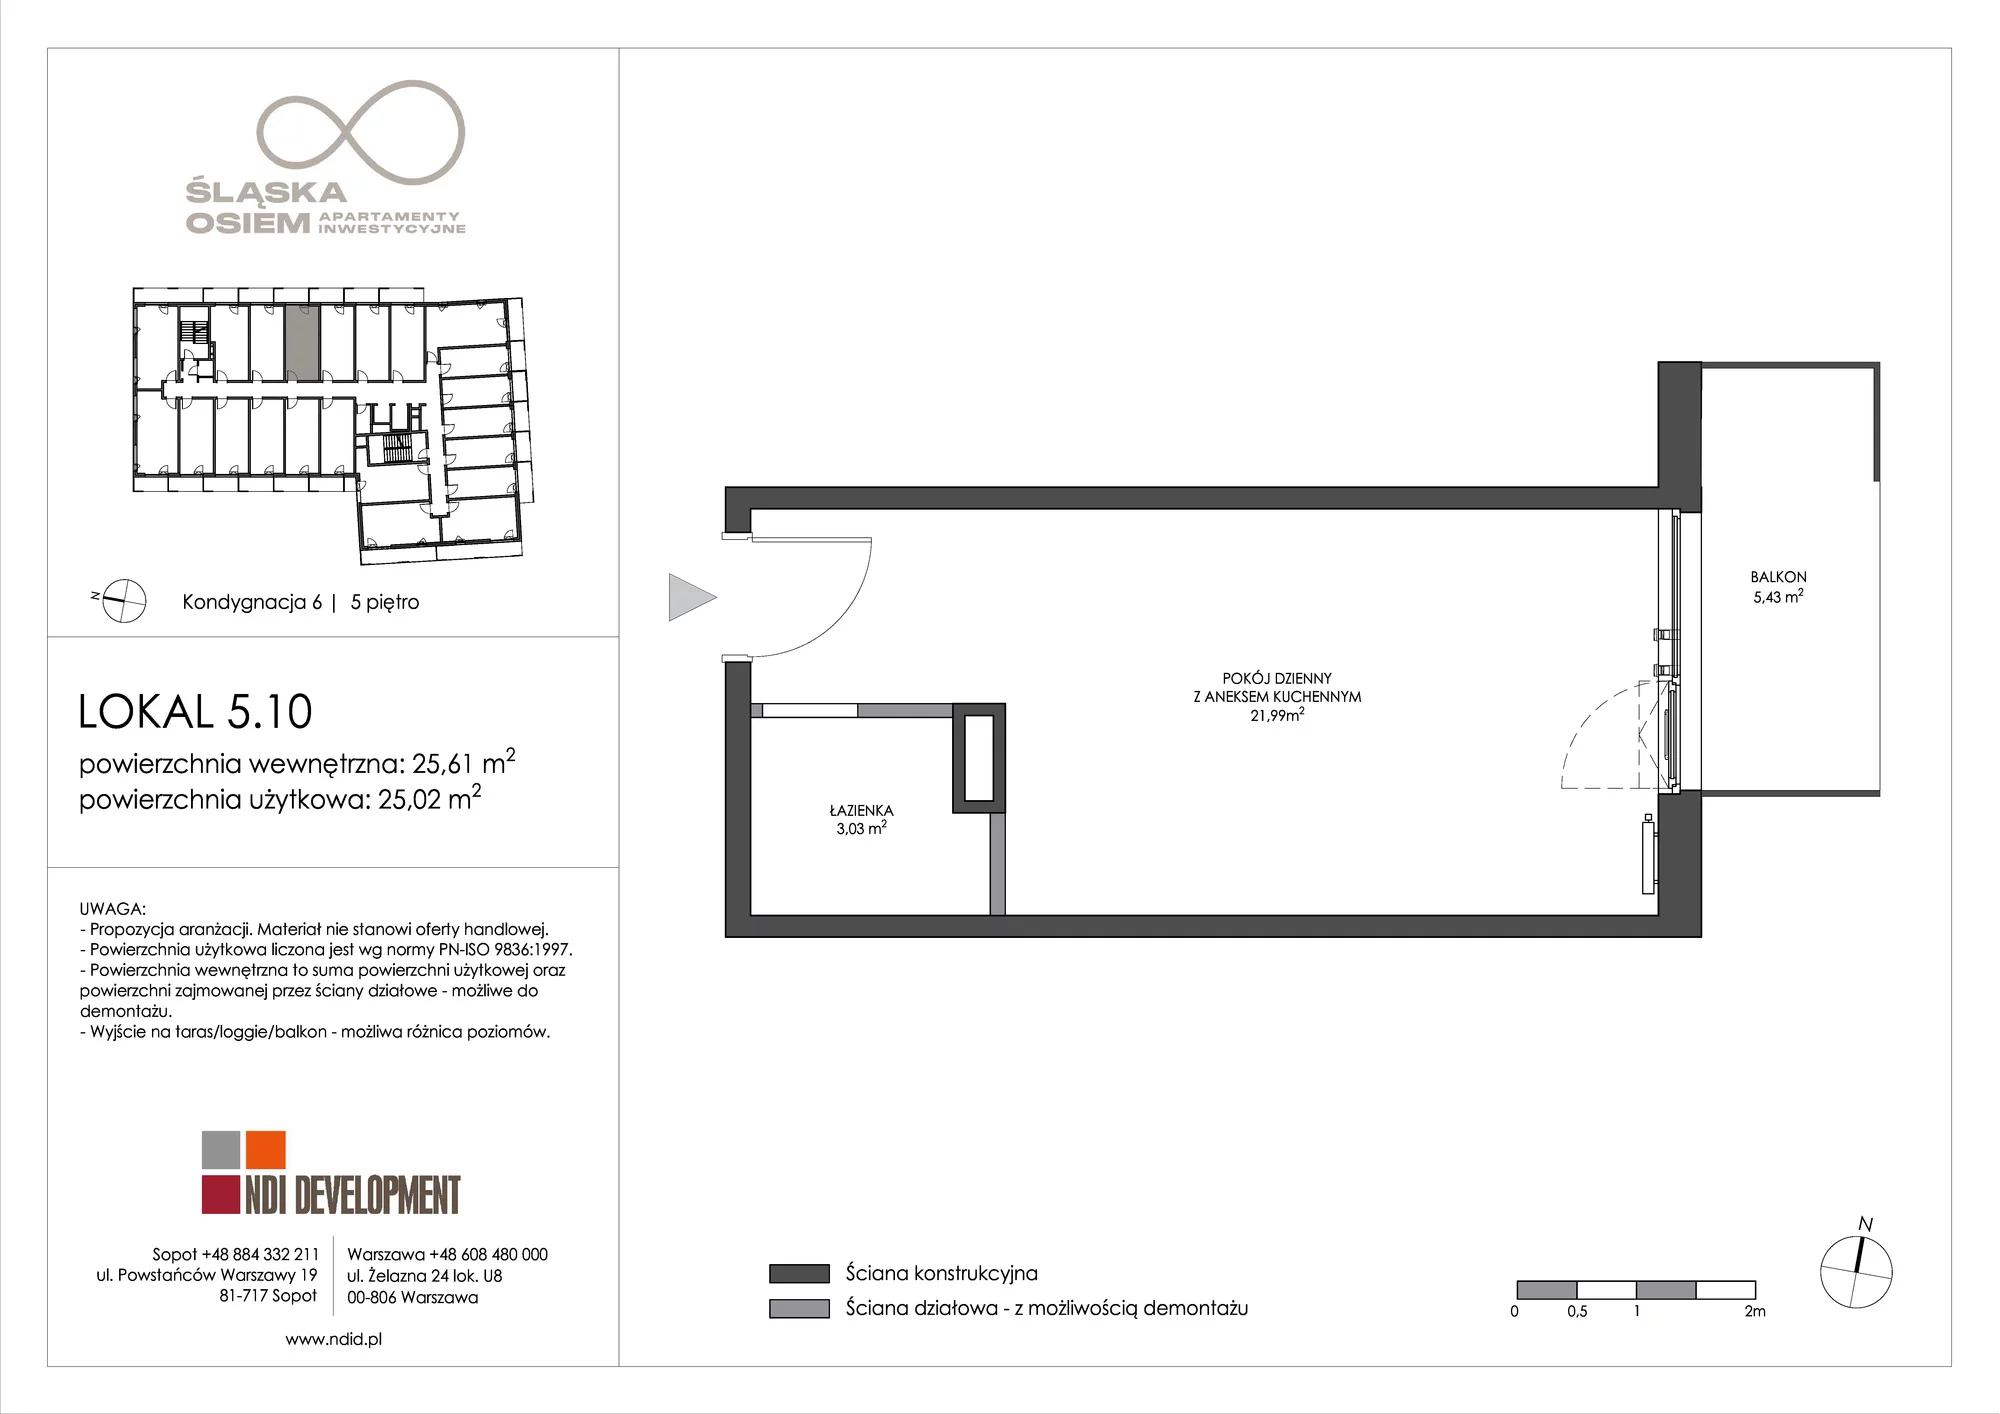 Apartament inwestycyjny 25,61 m², piętro 5, oferta nr 5.10, Śląska Osiem, Gdańsk, Przymorze, ul. Śląska 8